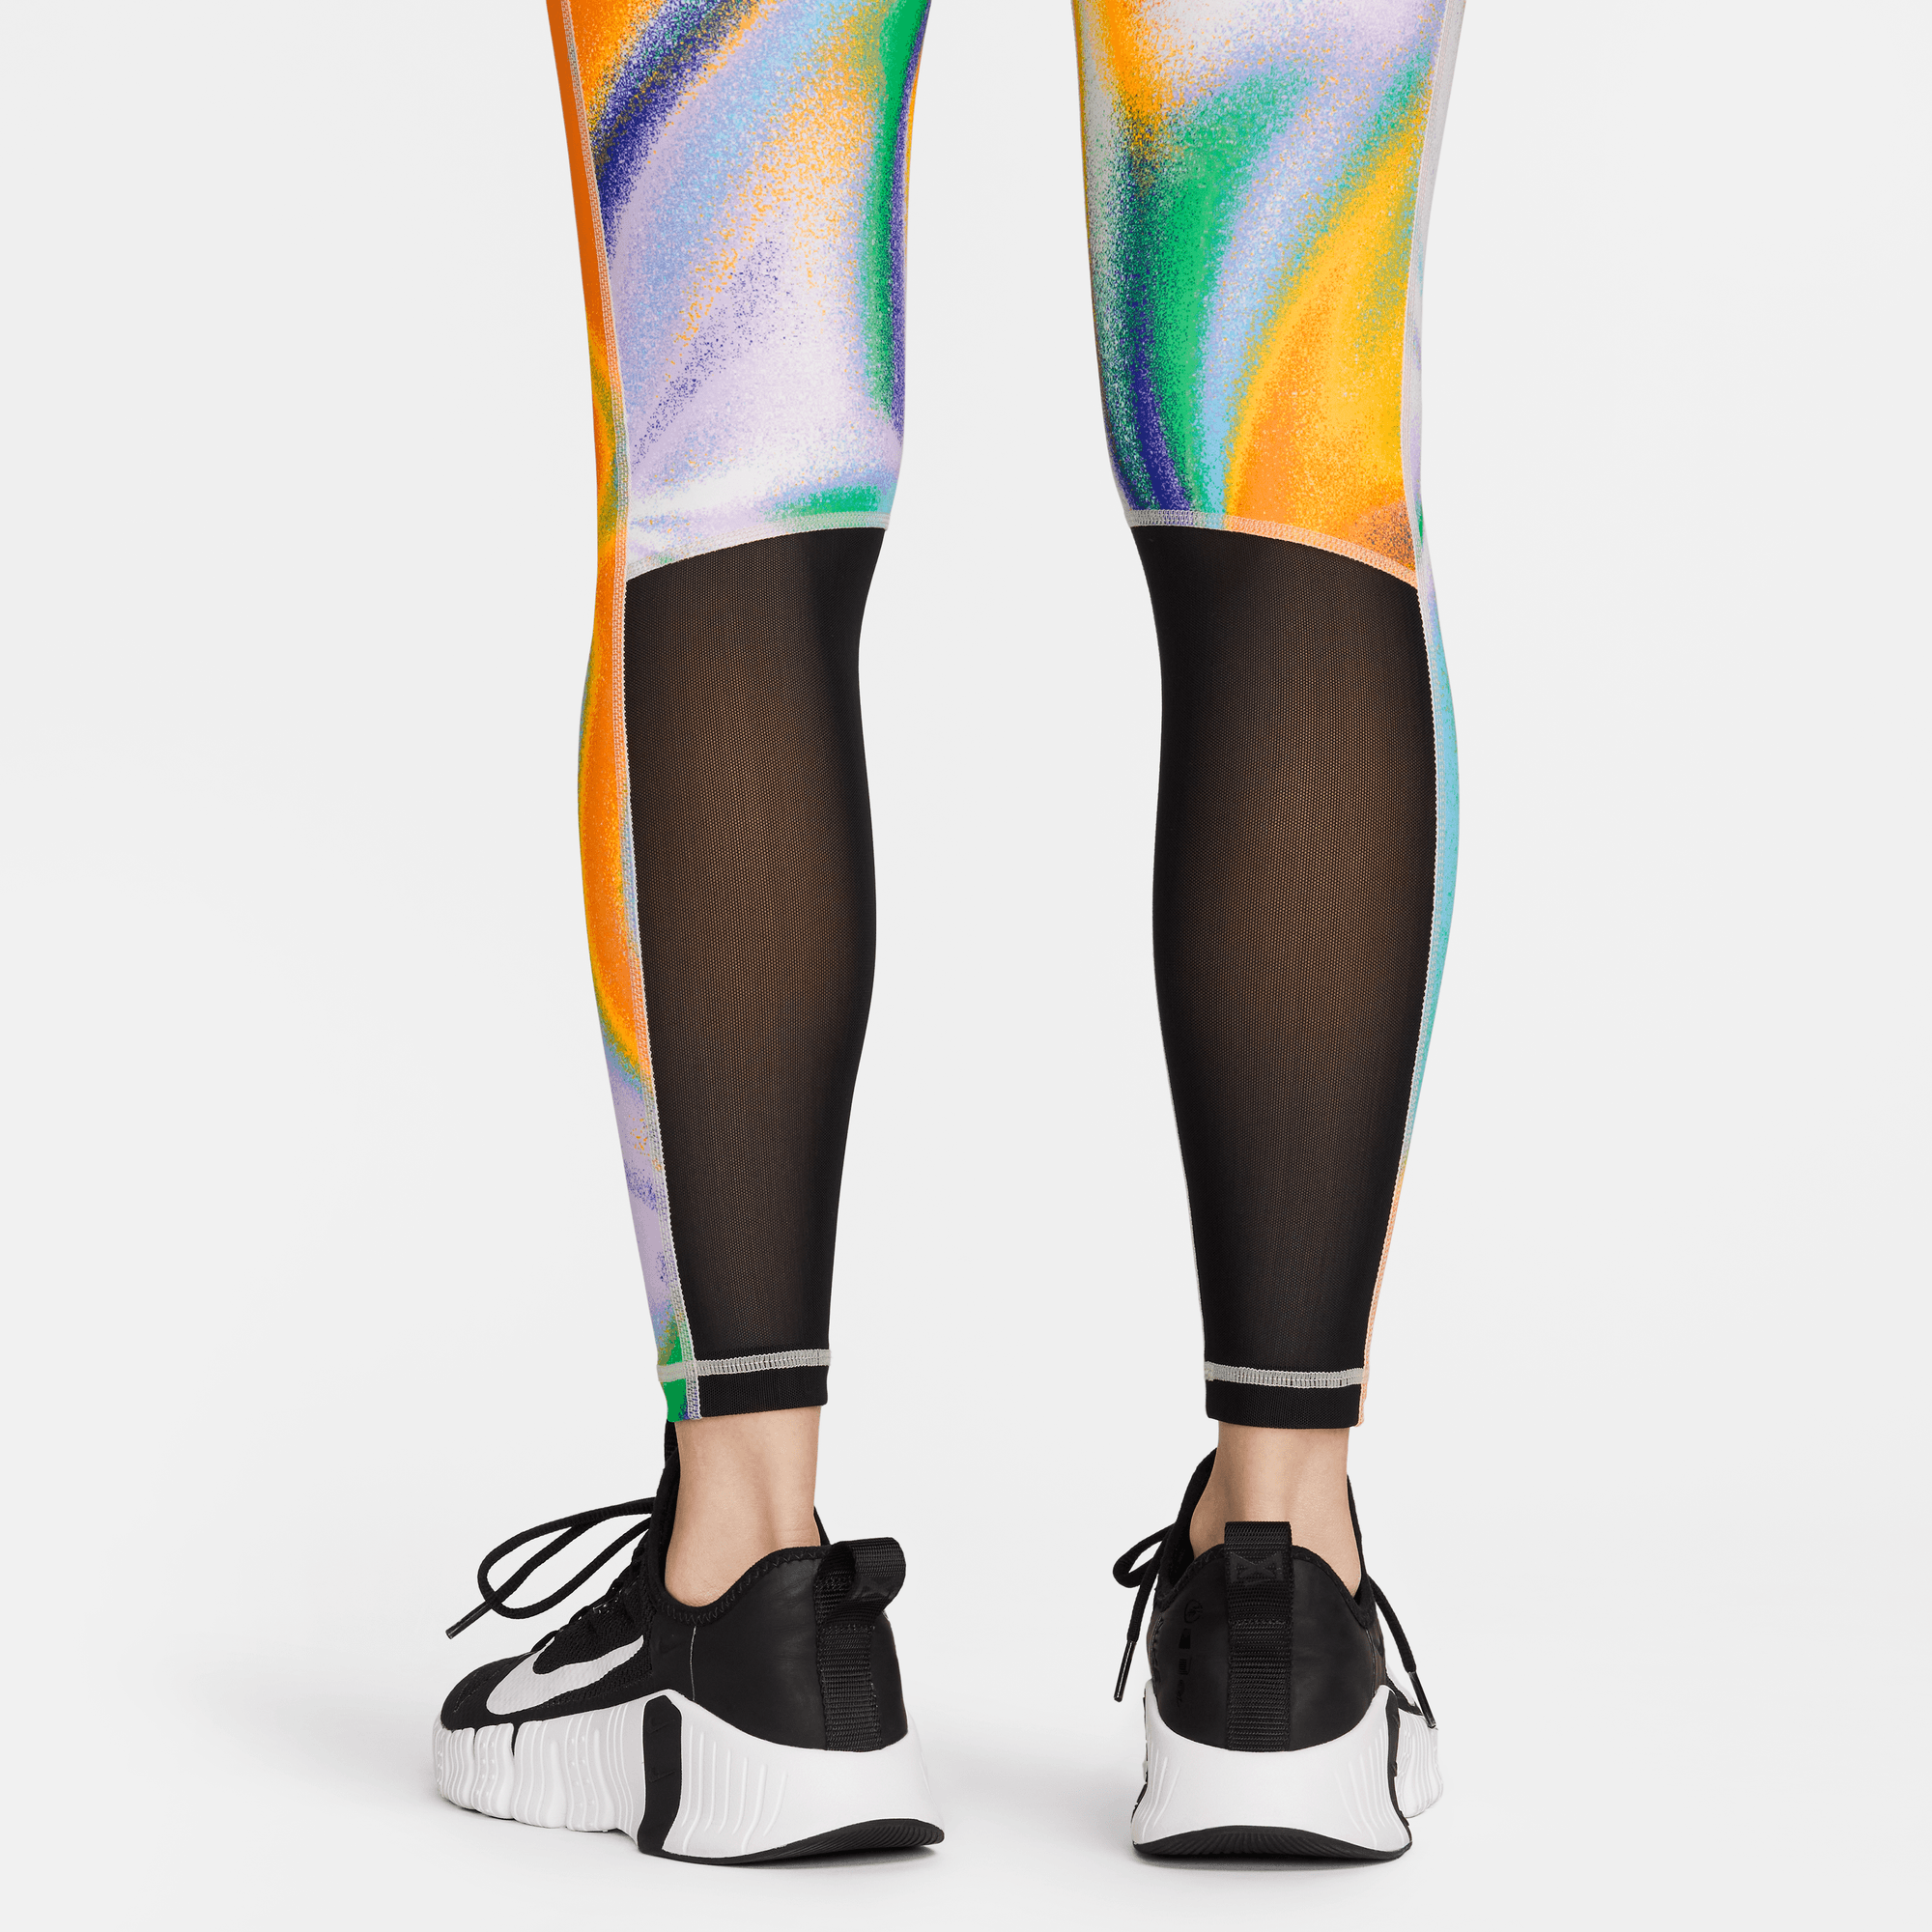 Nike Nike Pro Women's Mid-Rise Mesh-Paneled Leggings BLACK/WHITE –